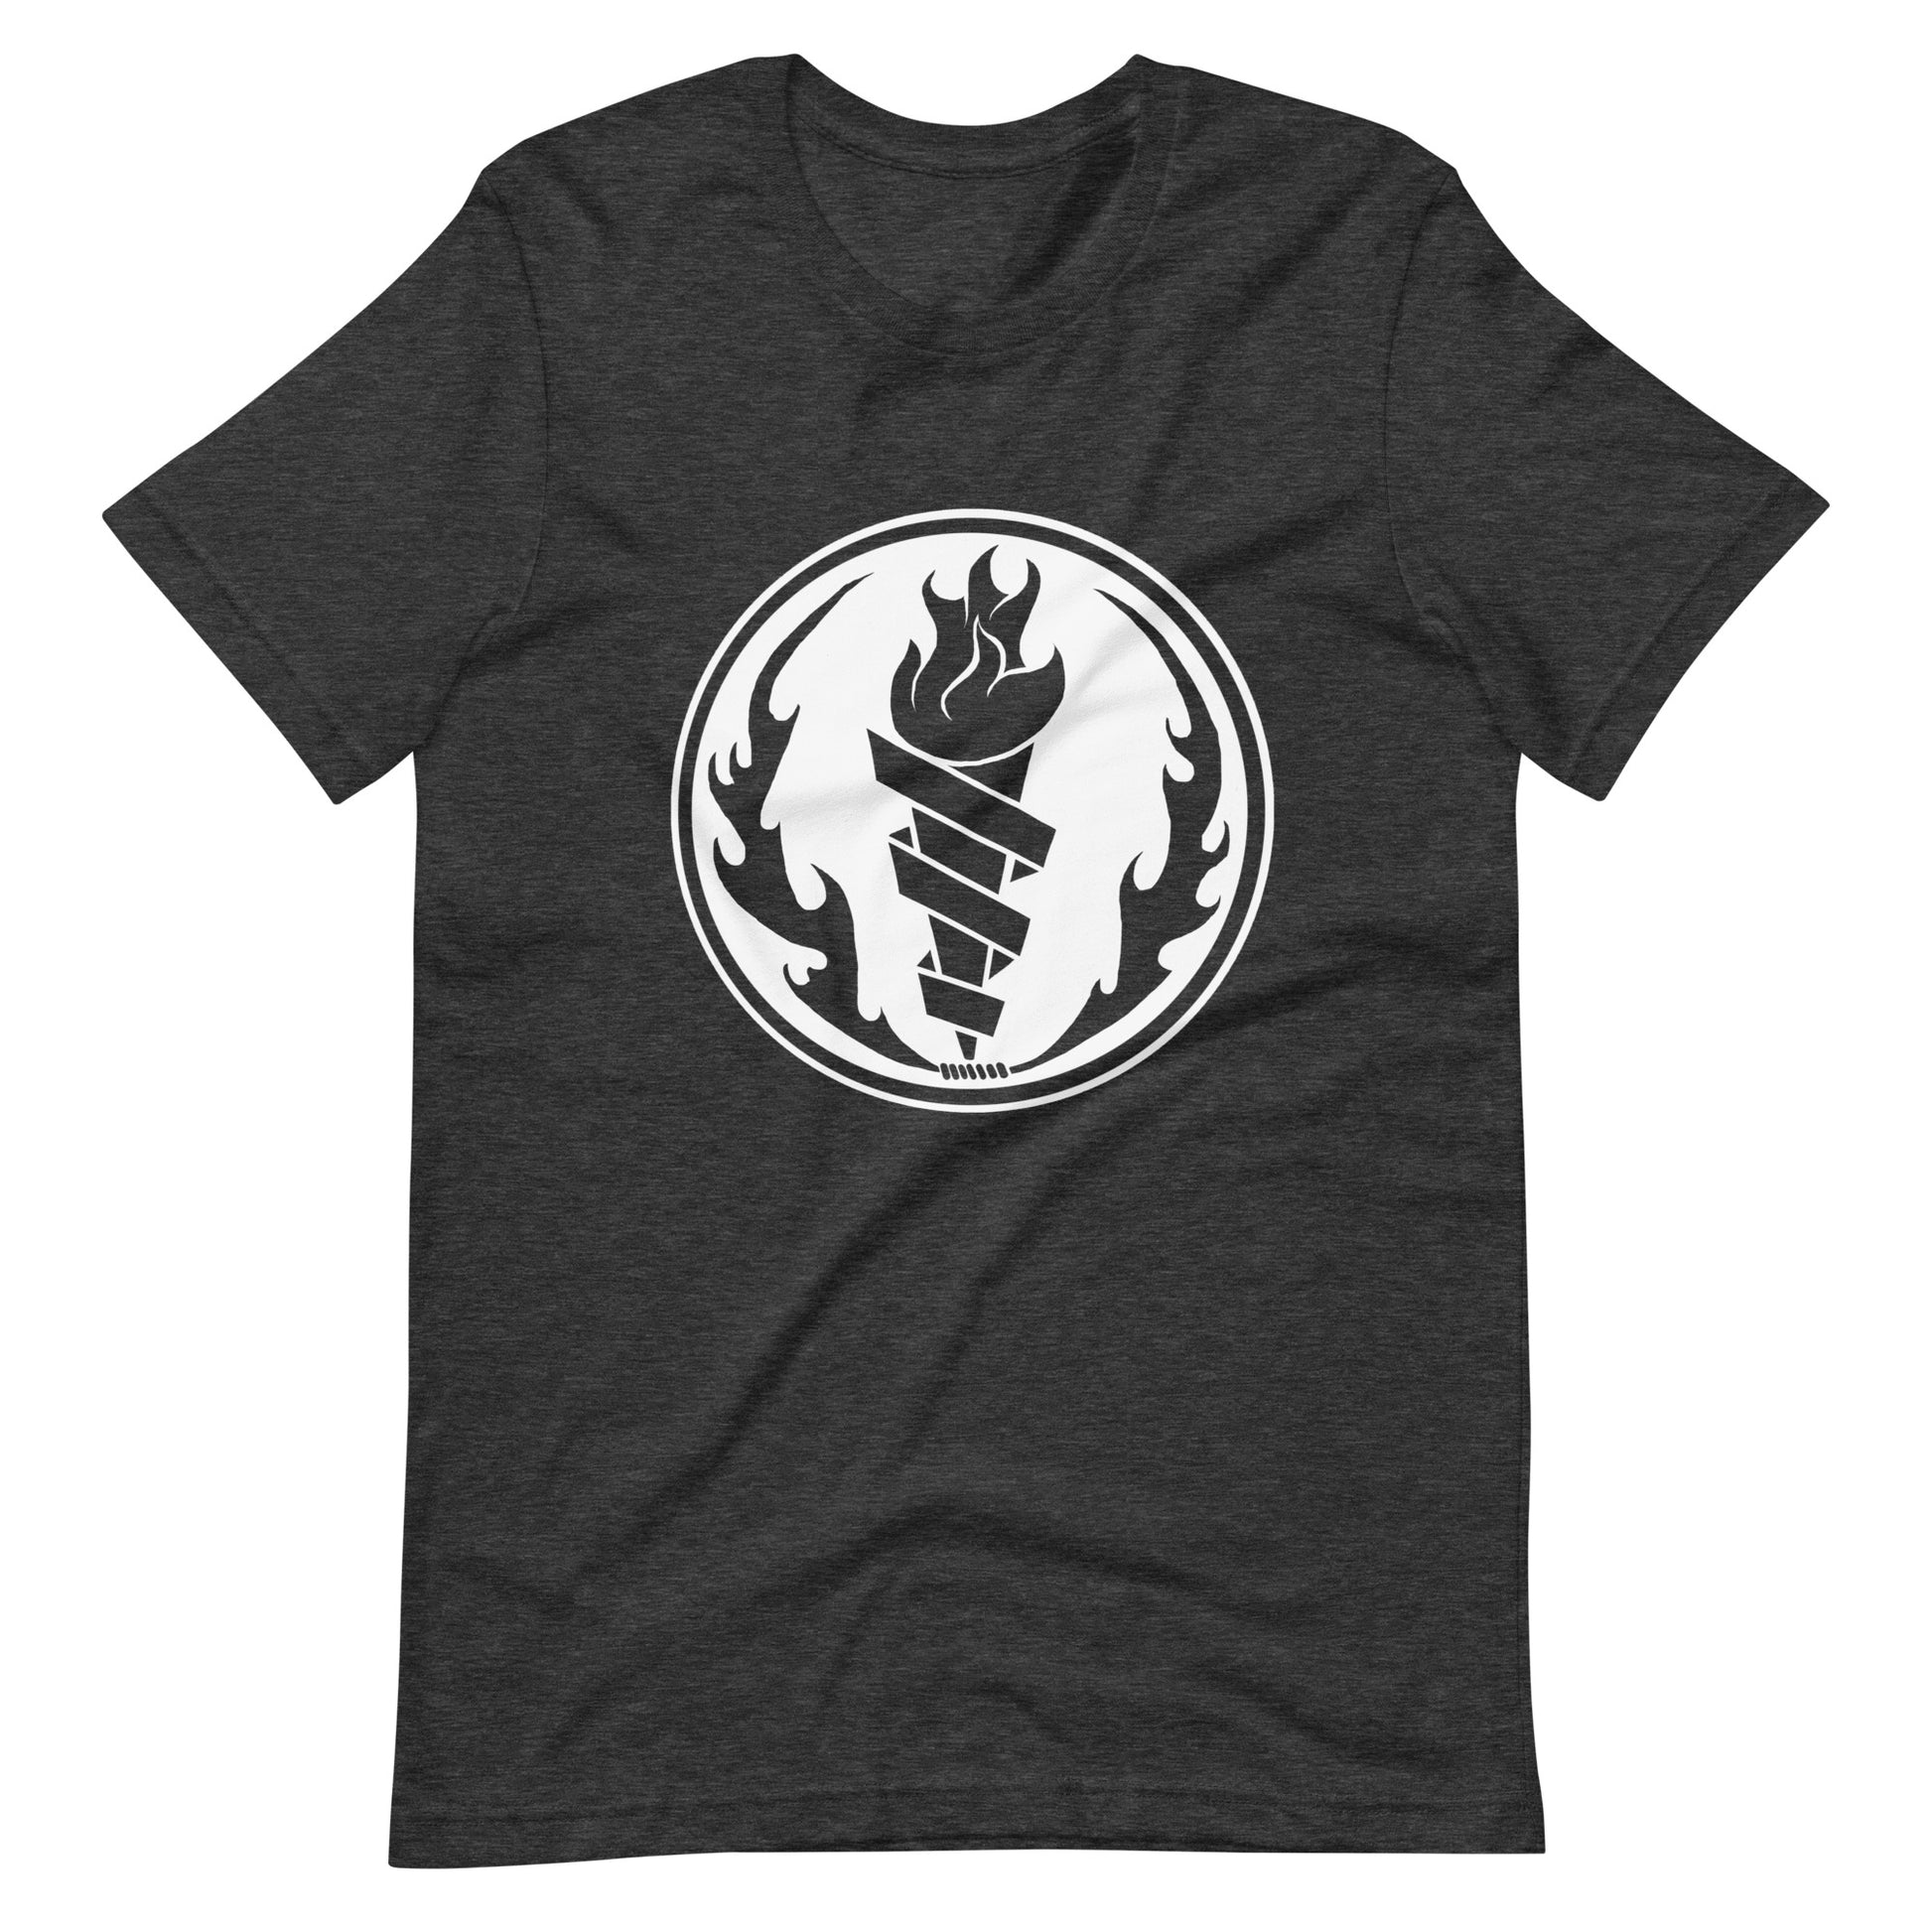 Fire Fire White - Men's t-shirt - Dark Grey Heather Front